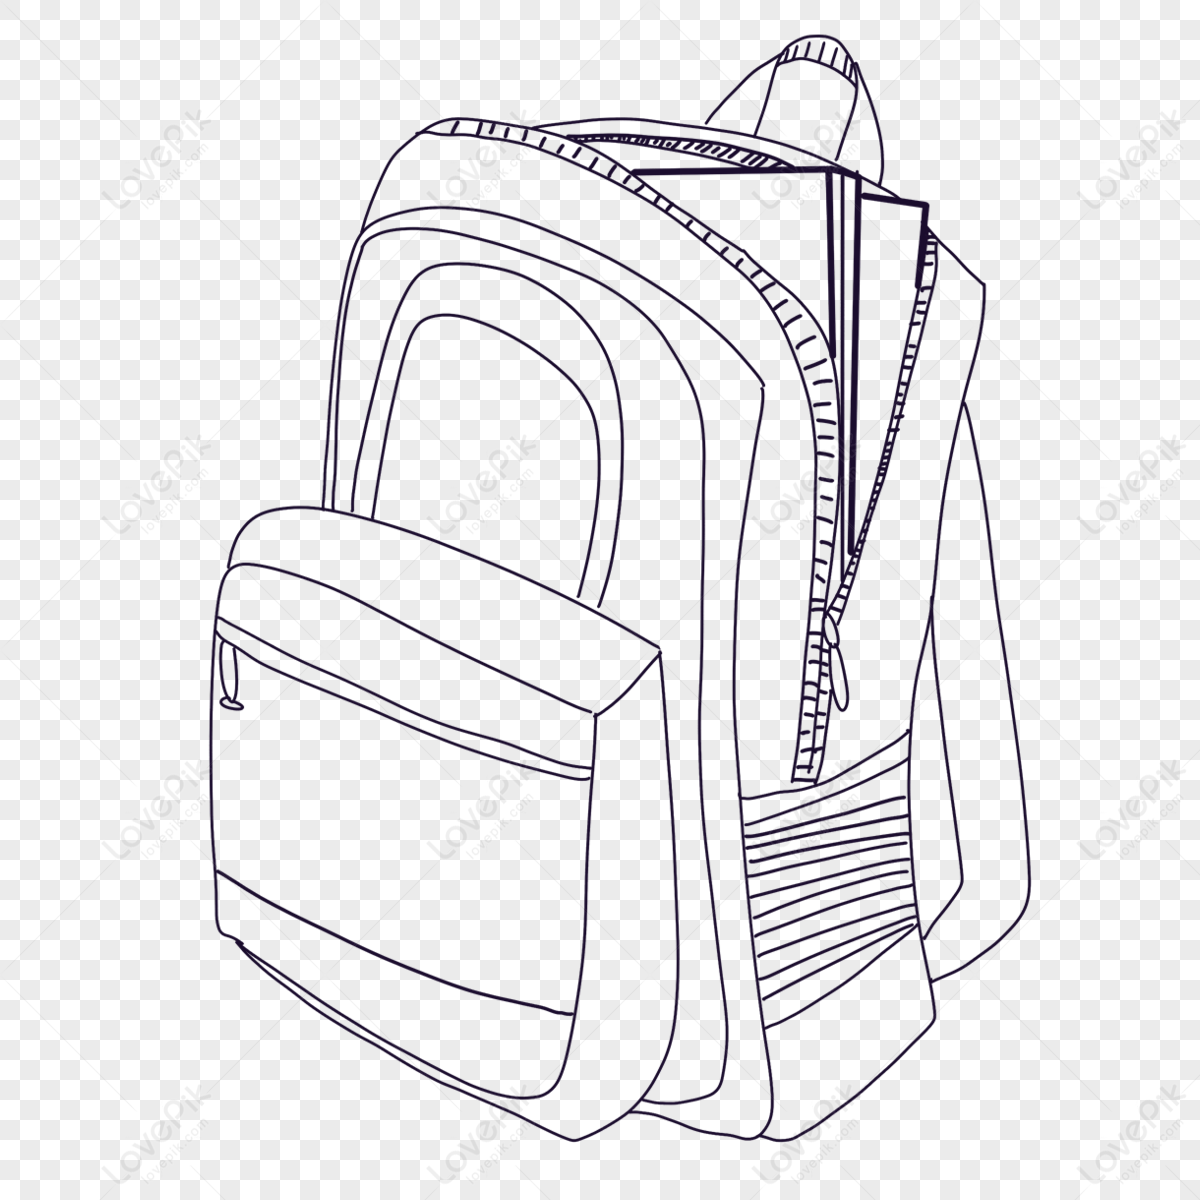 backpack or school bag drawing - Stock Illustration [91728612] - PIXTA